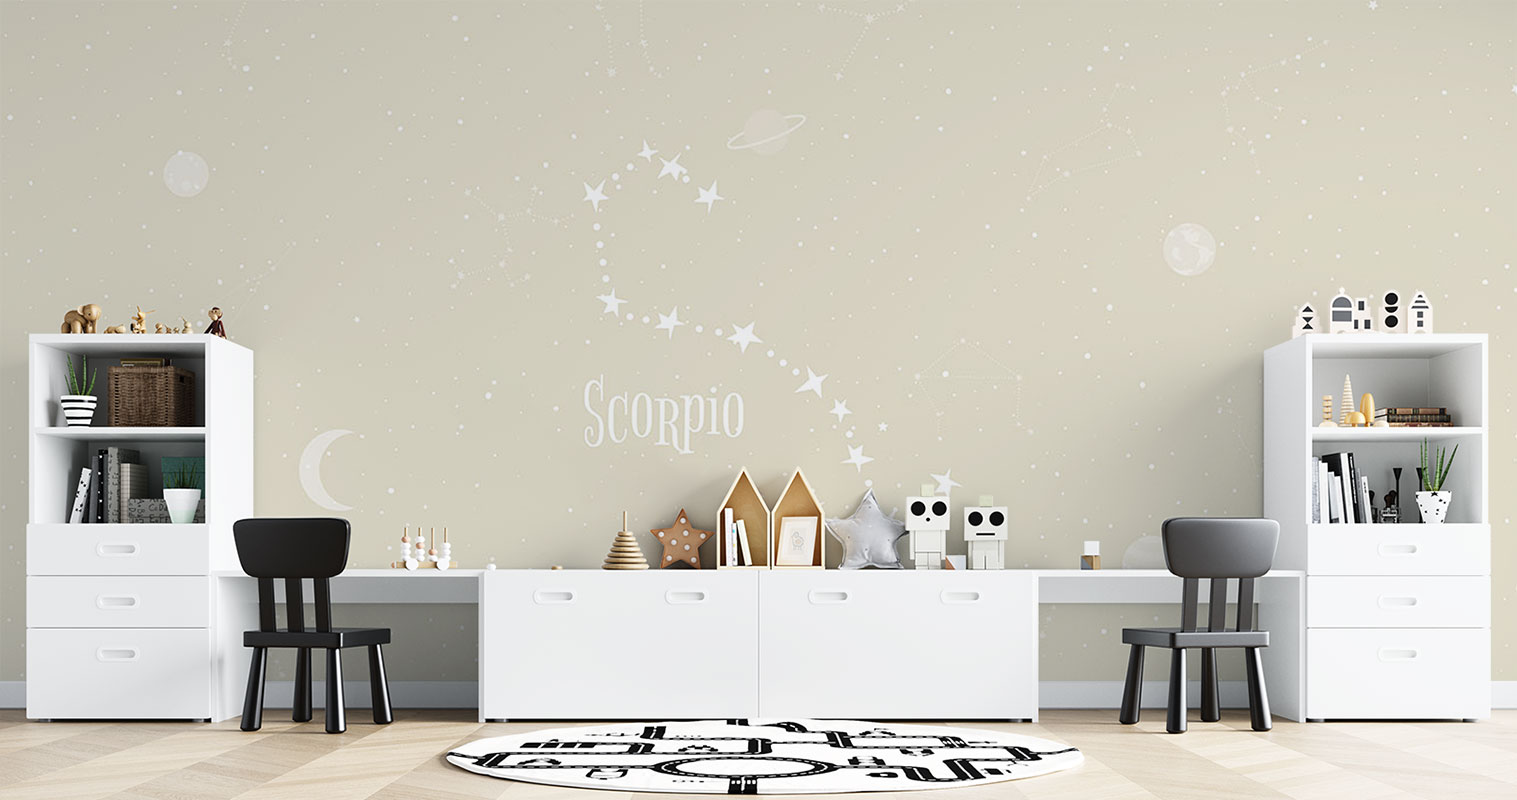 Horoscope Scorpio – Beige